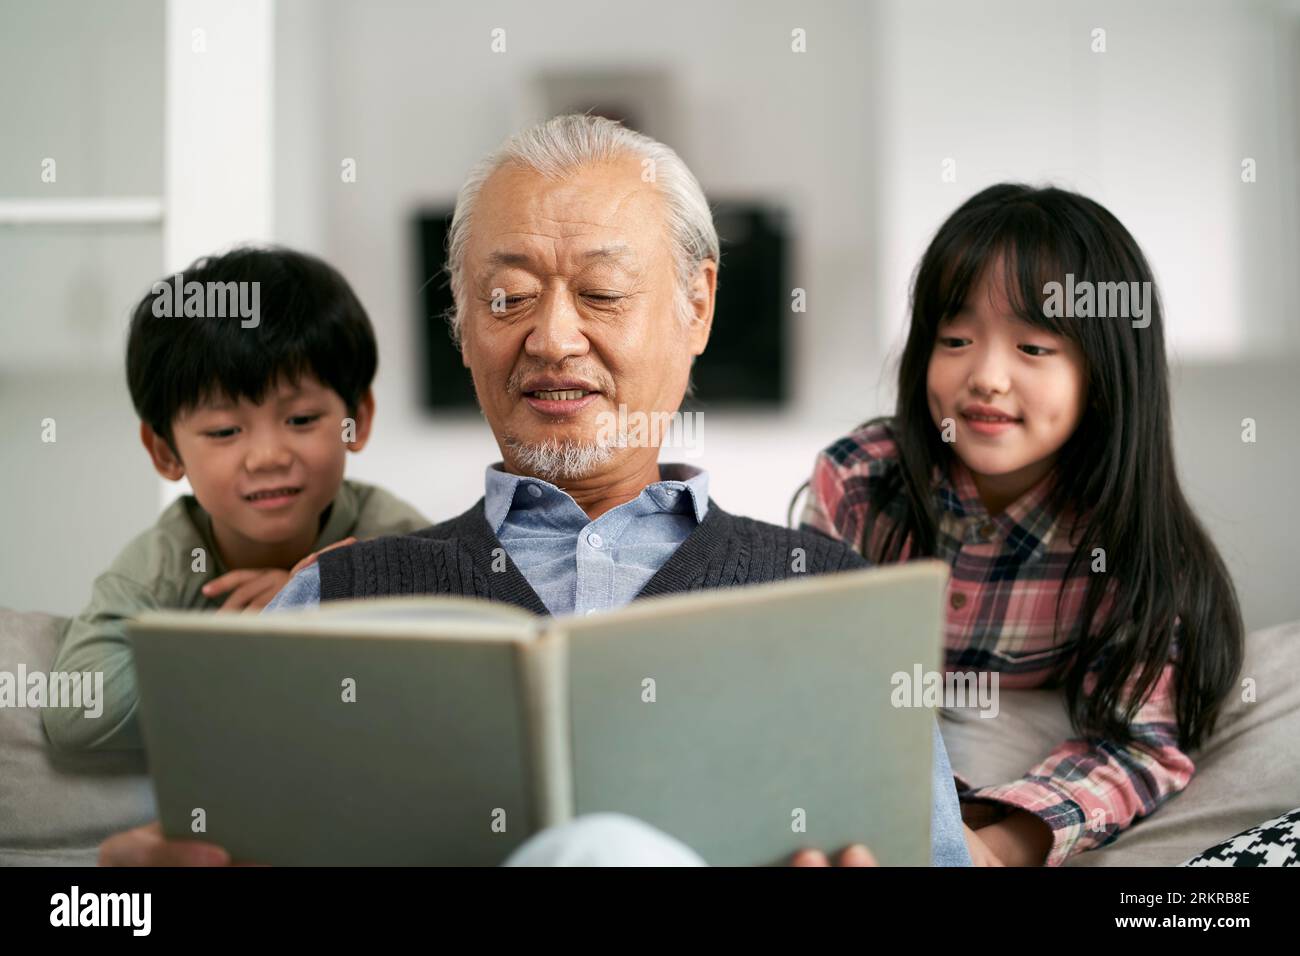 grand-père asiatique senior ayant un bon moment avec deux petits-enfants à la maison Banque D'Images